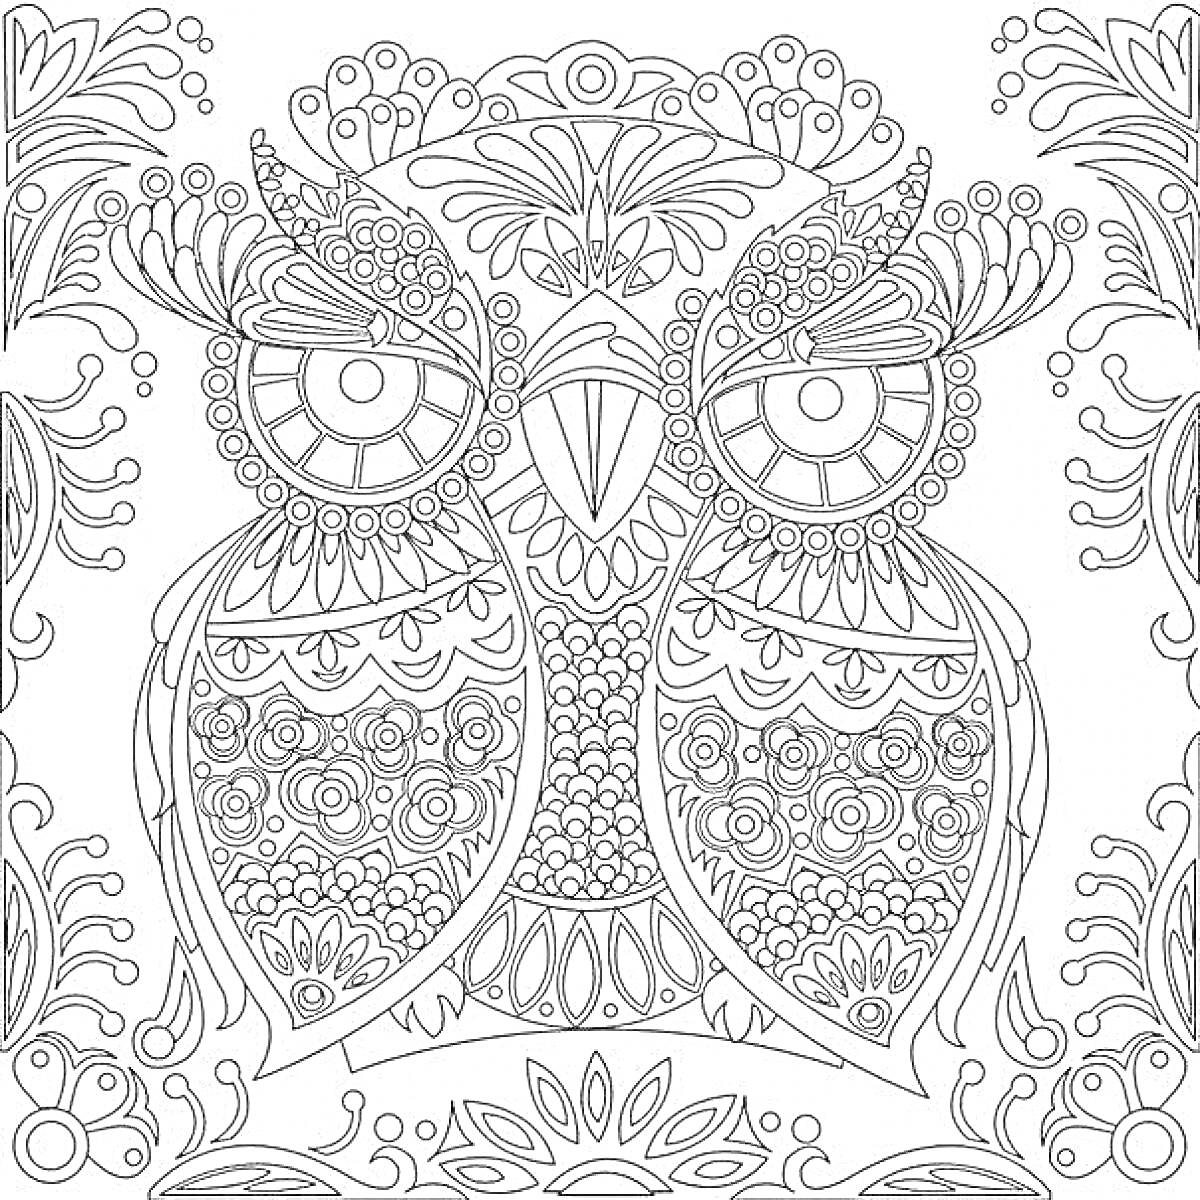 РаскраскаРаскраска с декоративной совой и узором из цветов и листьев